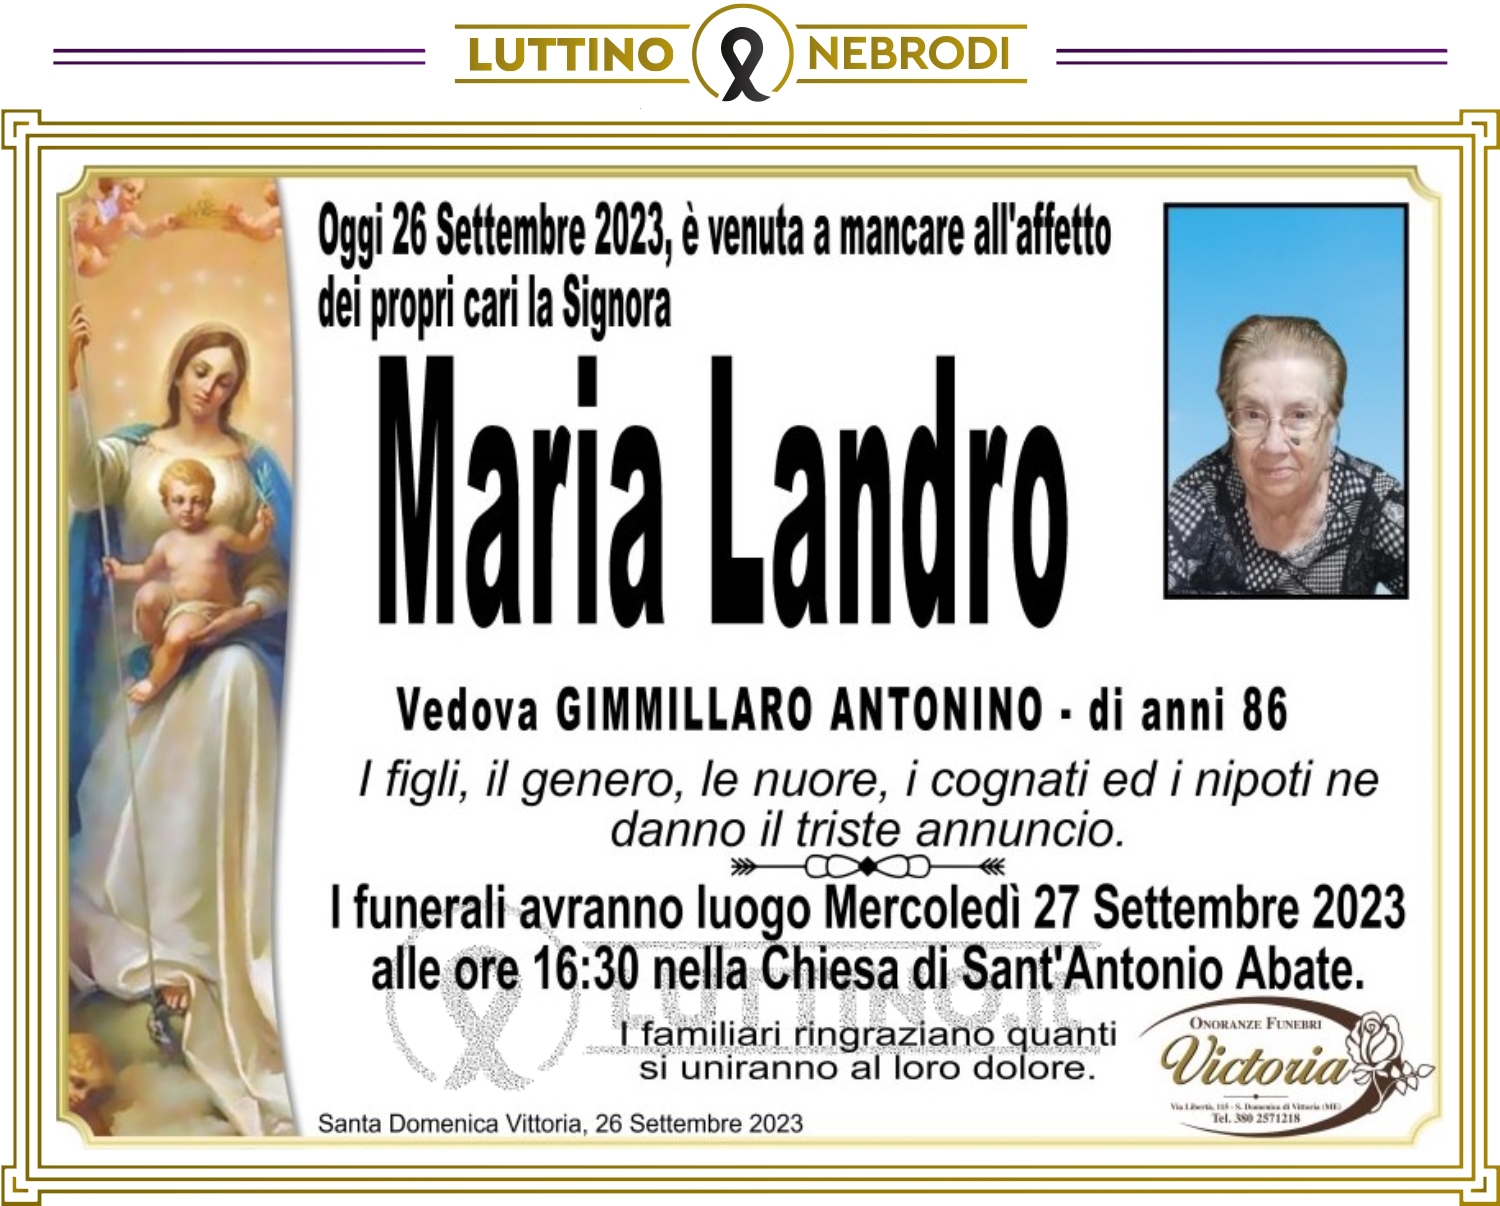 Maria Landro